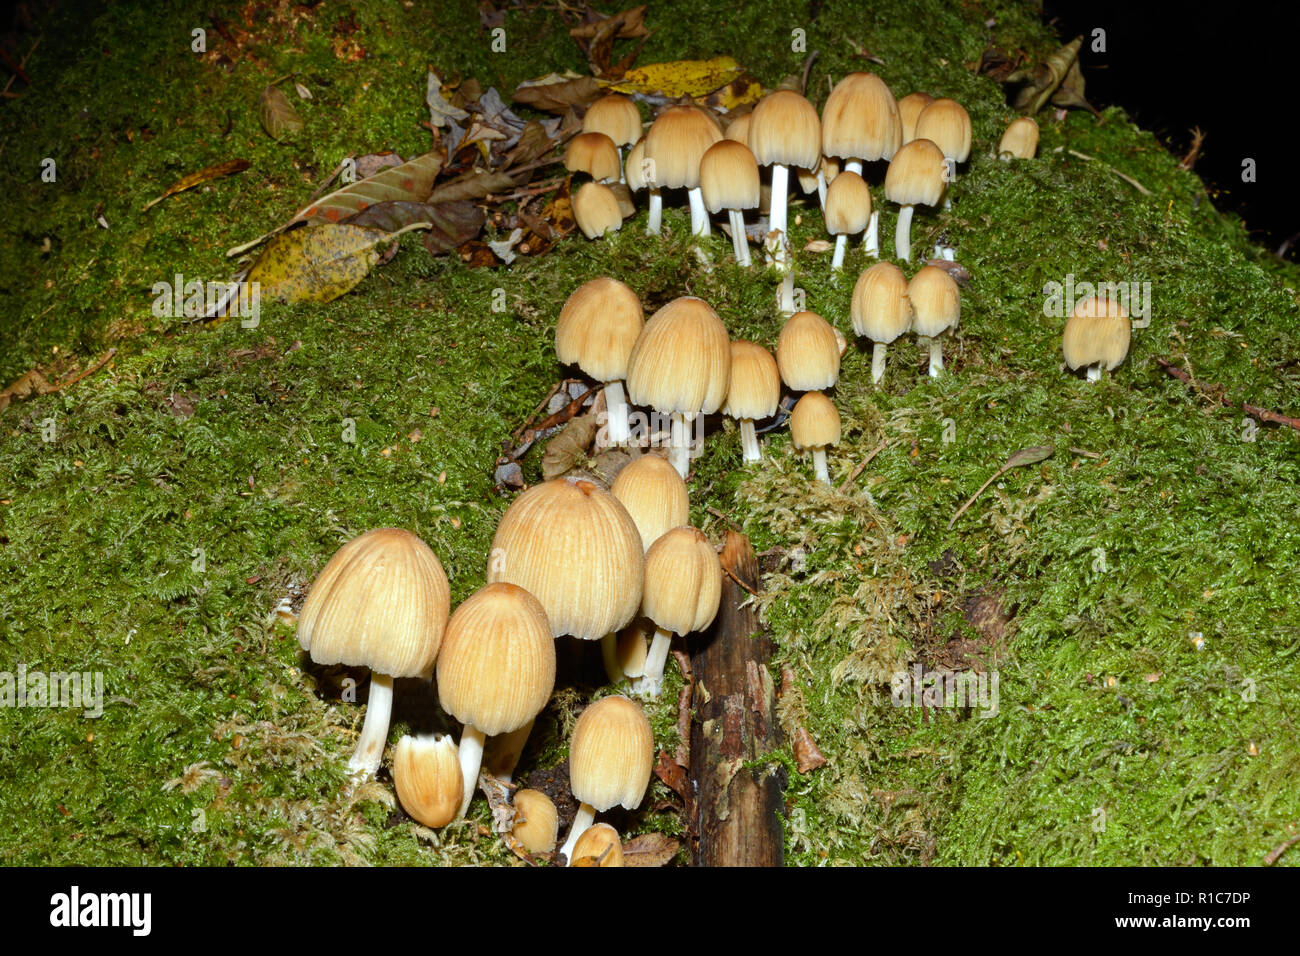 Patronymie micaceus est un champignon commun dans la famille footballeur angolais se trouvent souvent sur des souches ou de sciage de feuillus. Banque D'Images